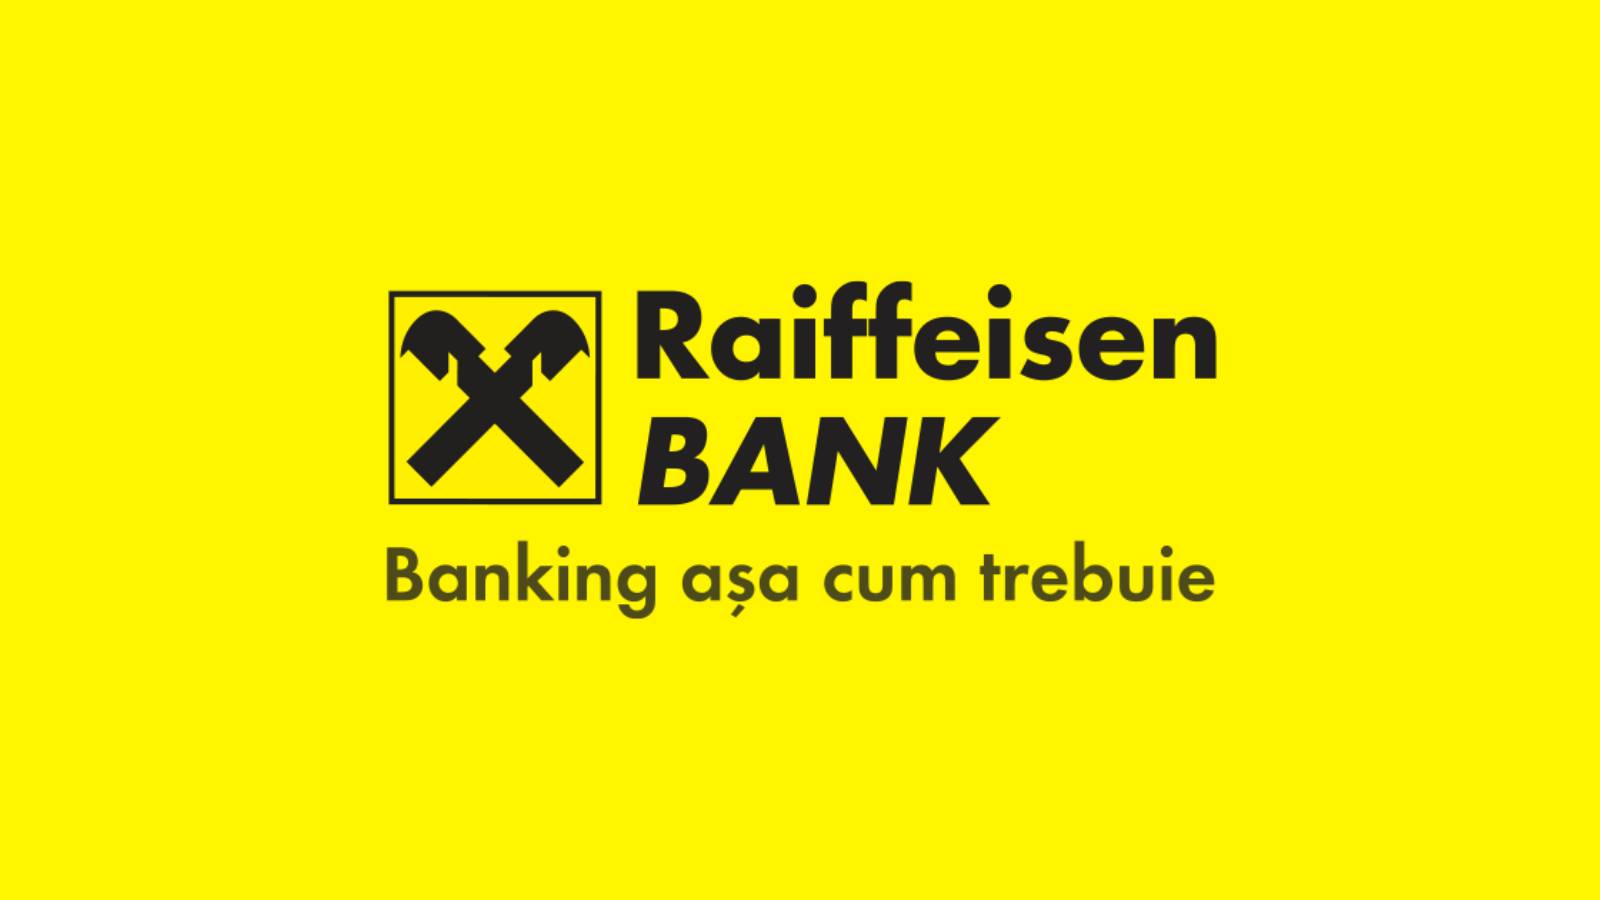 Officieel aangekondigde beslissing van Raiffeisen Bank heeft gevolgen voor klanten